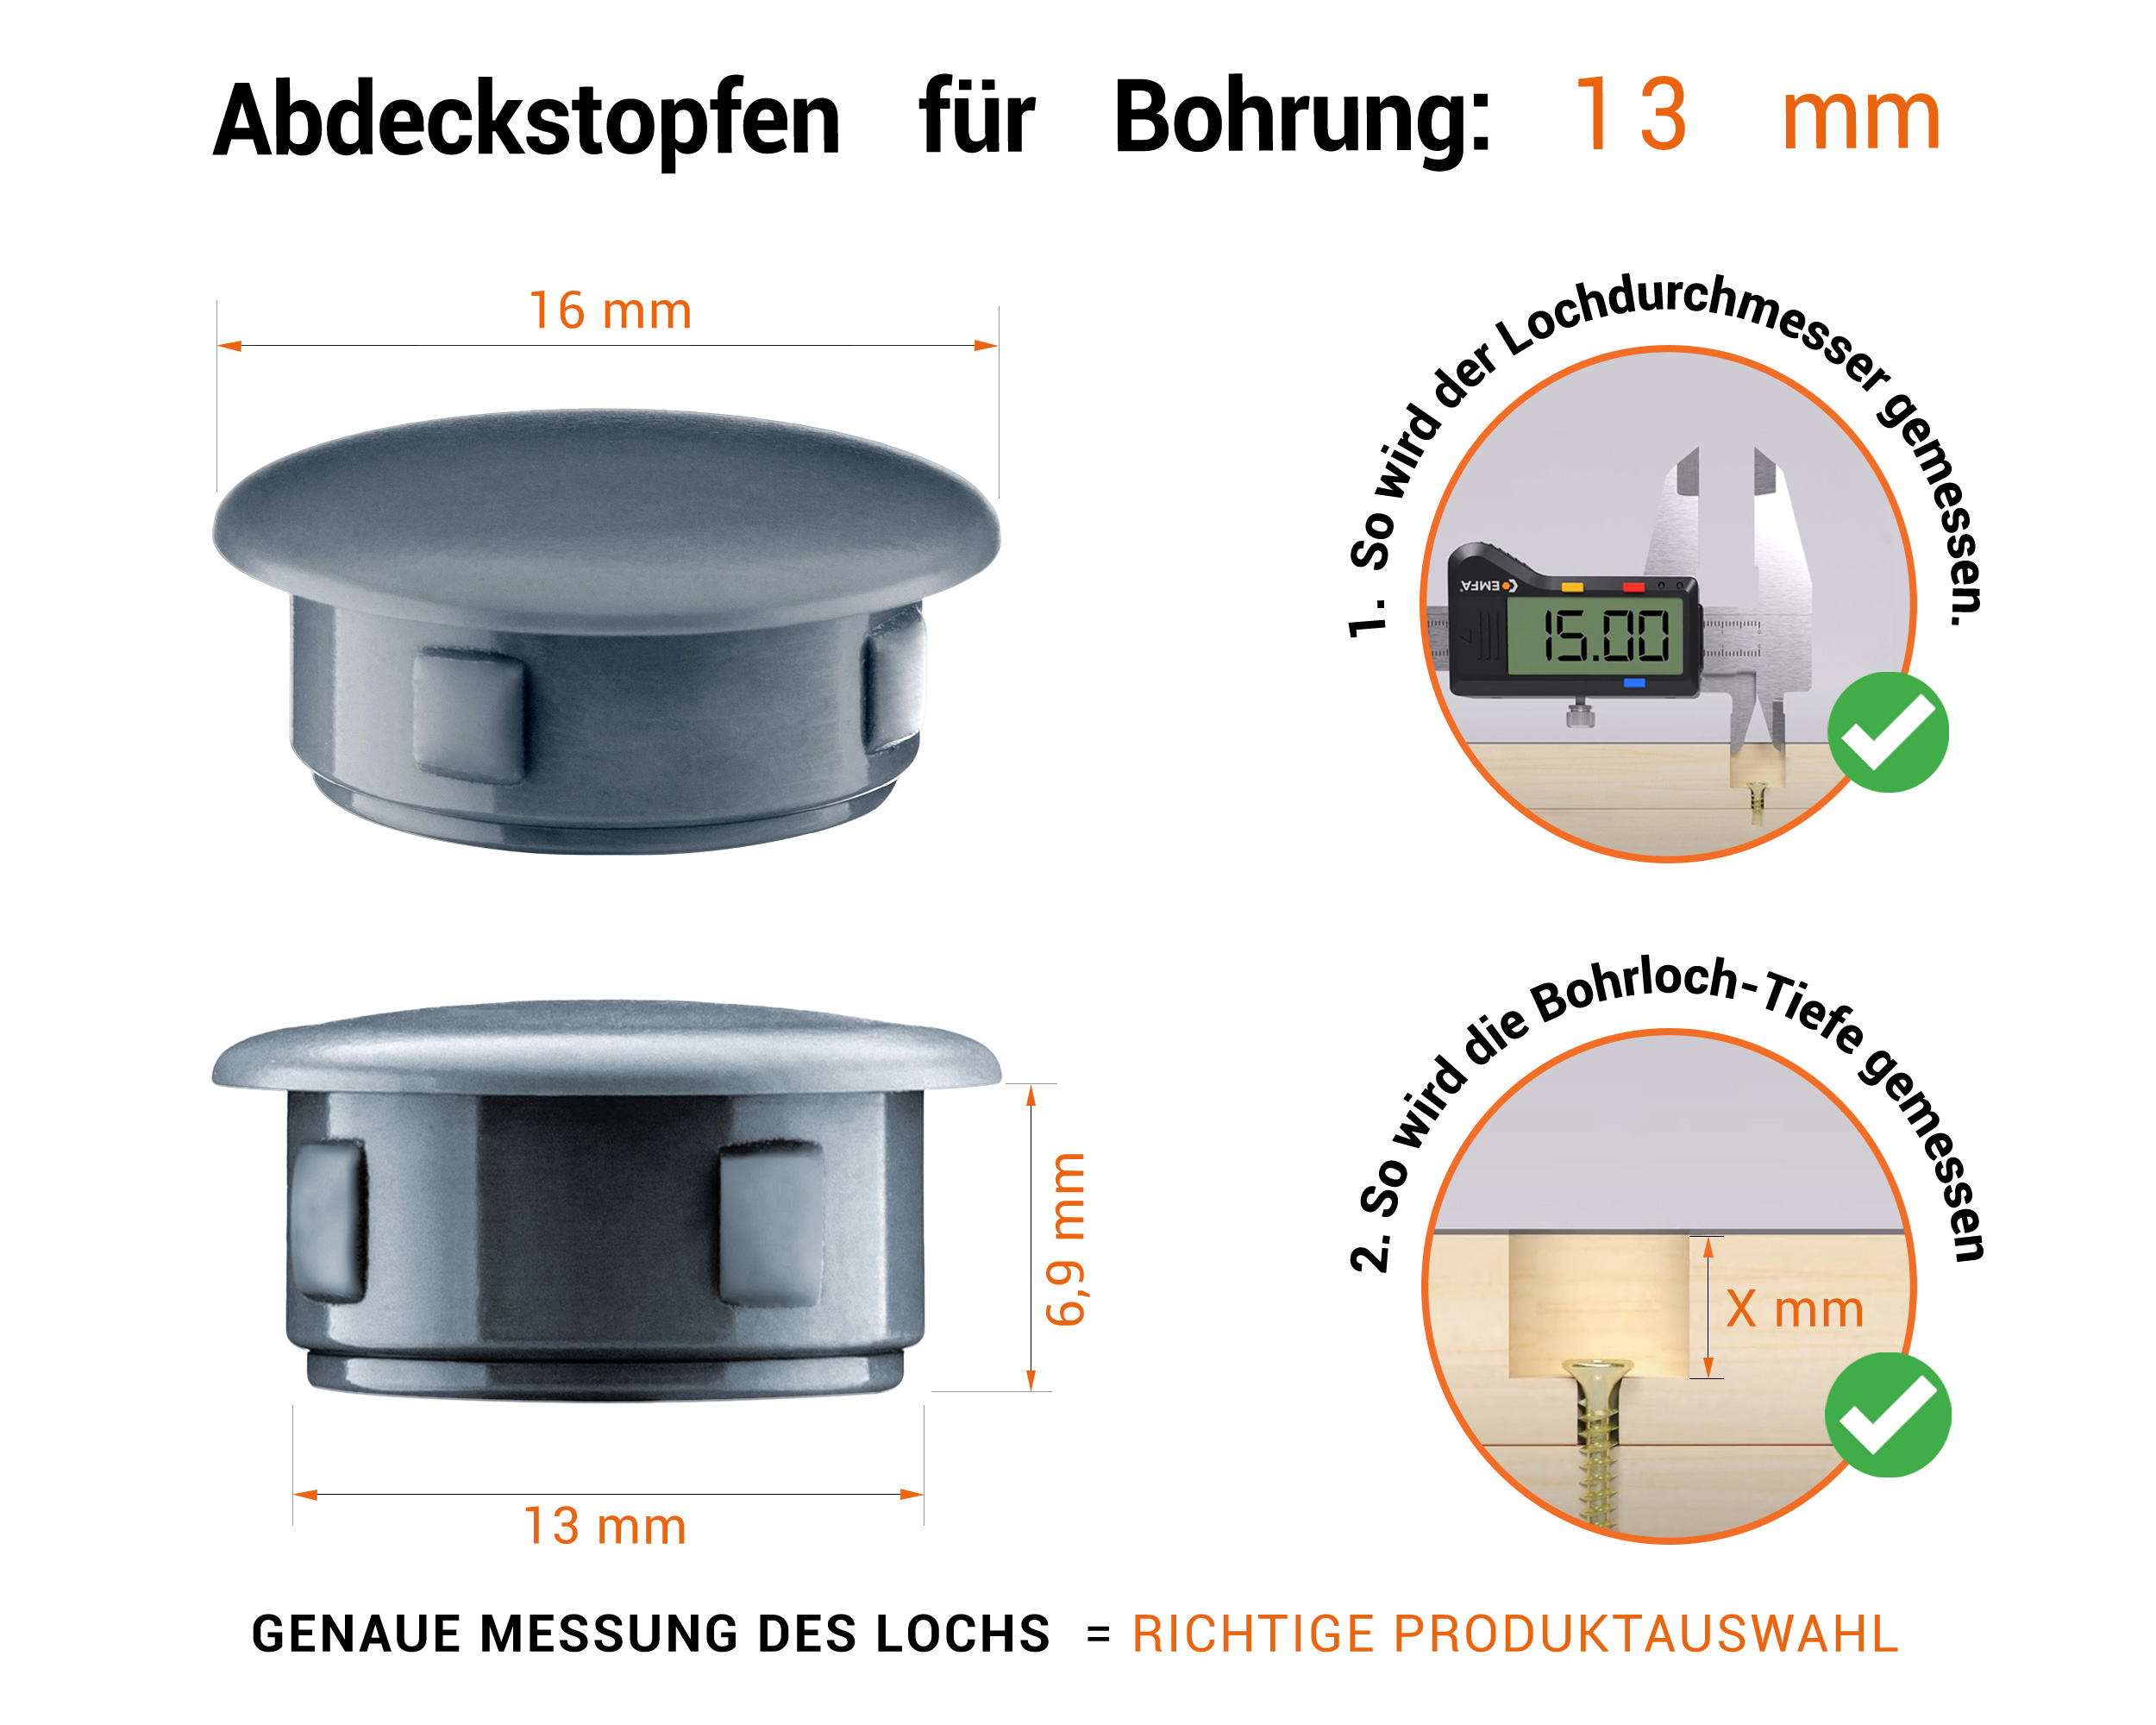 Anthrazite Blindstopfen aus Kunststoff für Bohrung 13 mmmm mit technischen Abmessungen und Anleitung für korrekte Messung